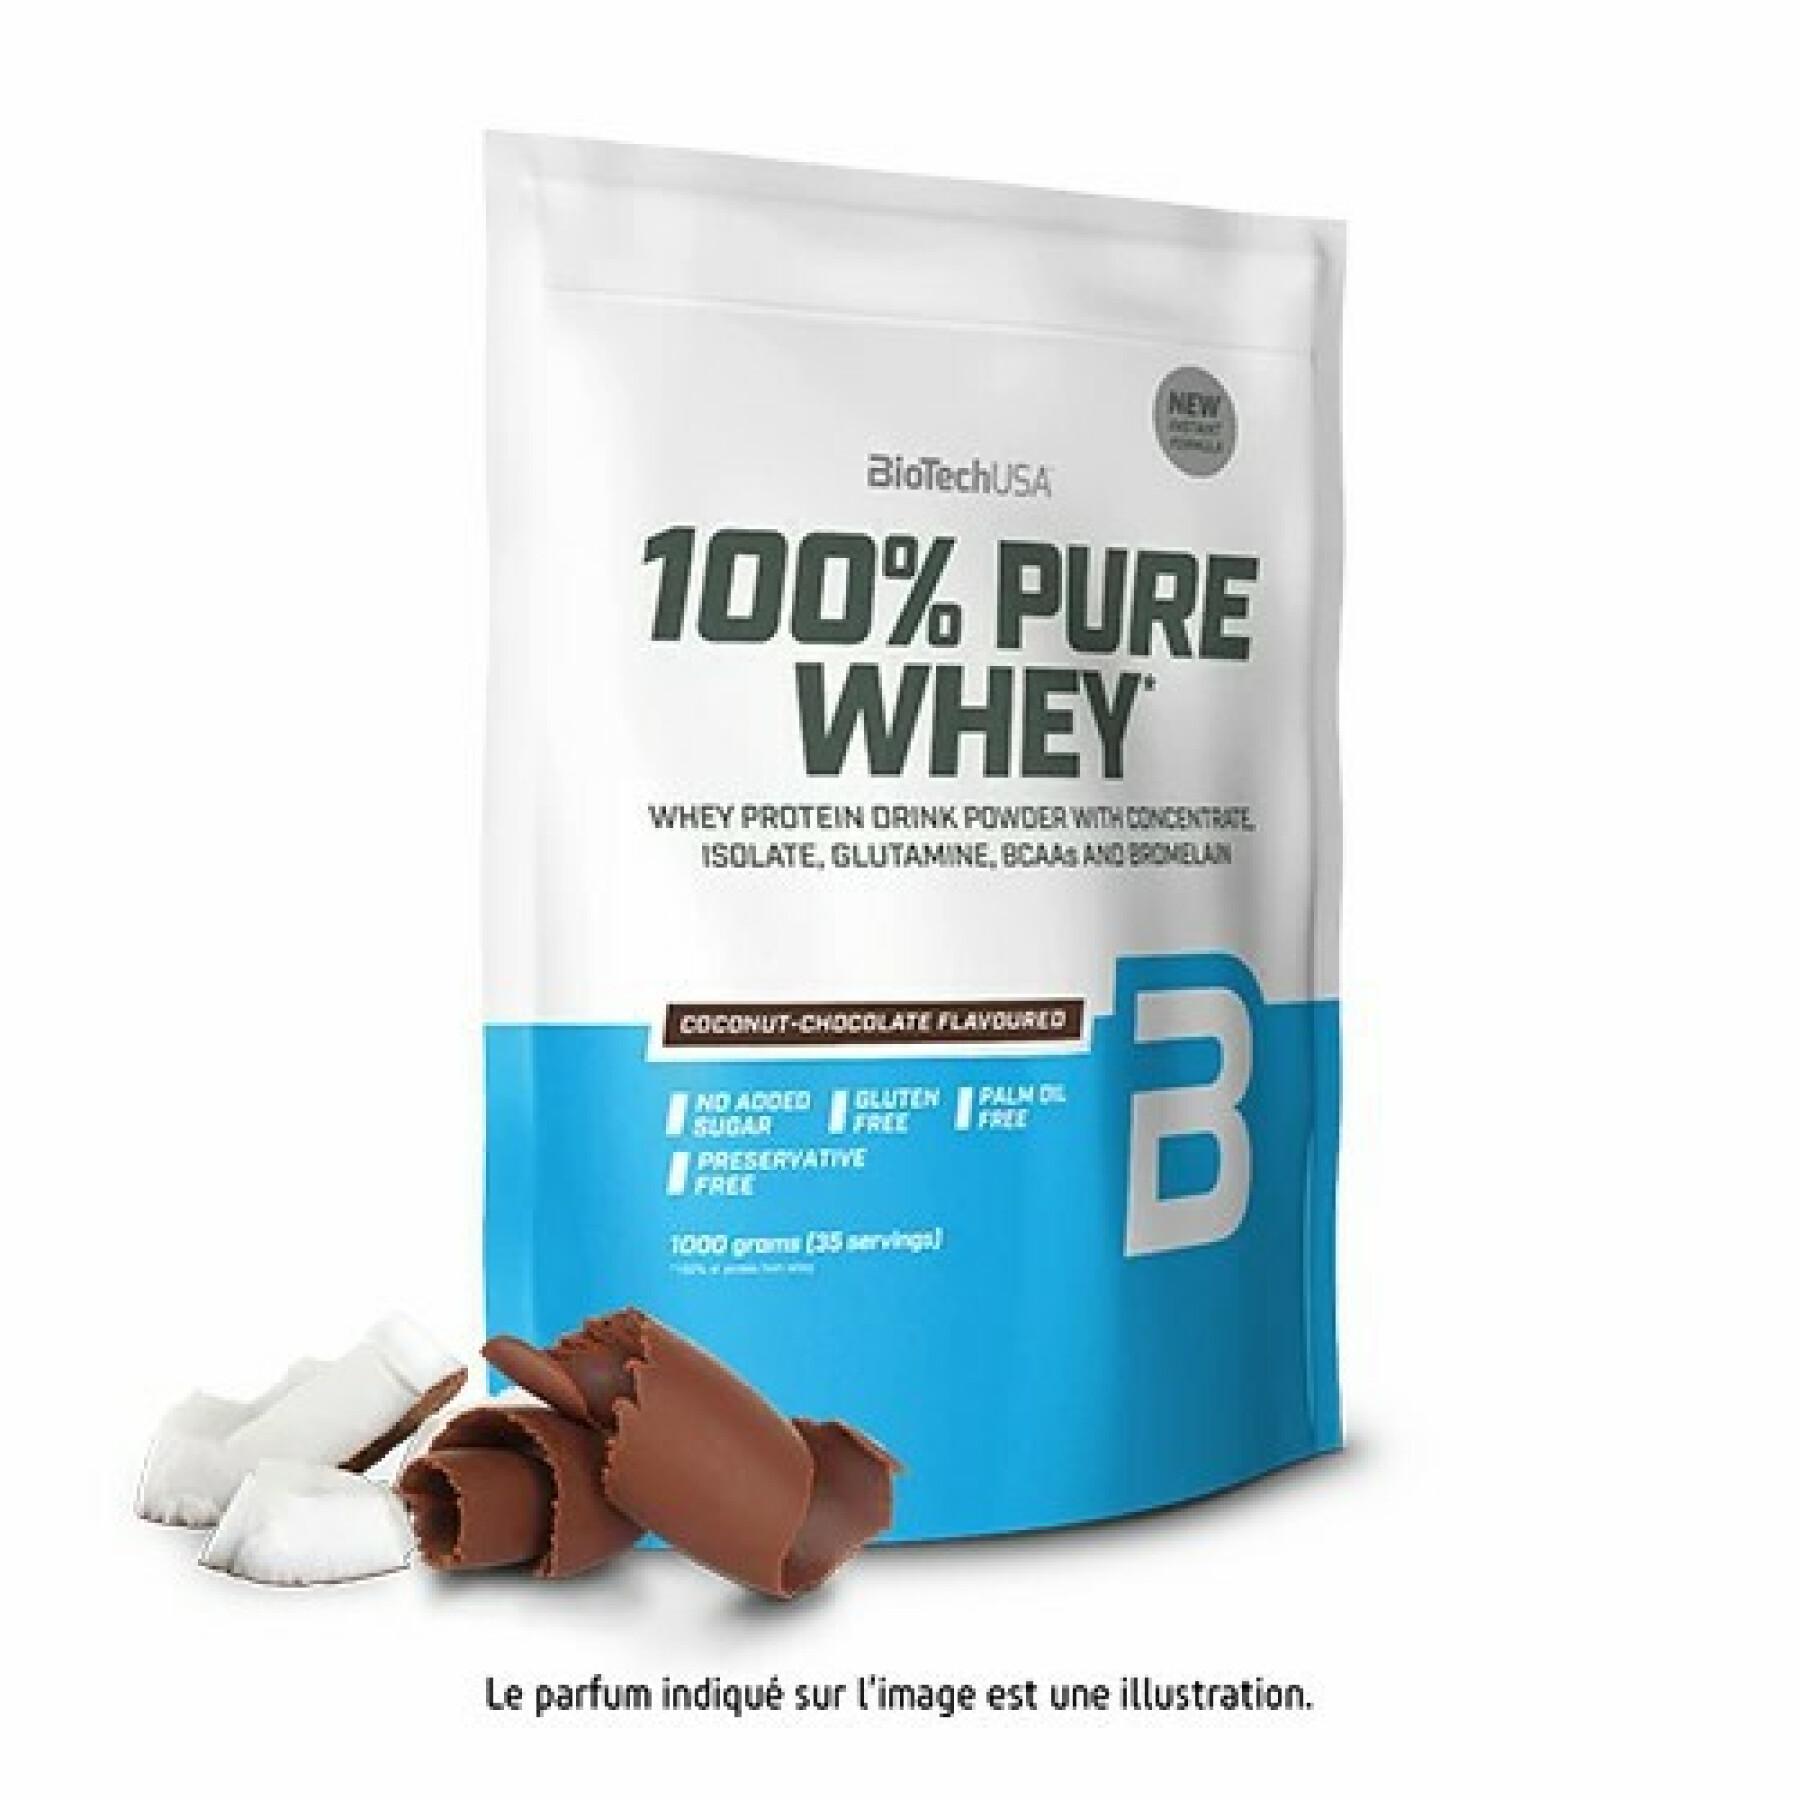 Paquete de 10 bolsas de proteína de suero 100% pura Biotech USA - Noix de coco-chocolat - 1kg